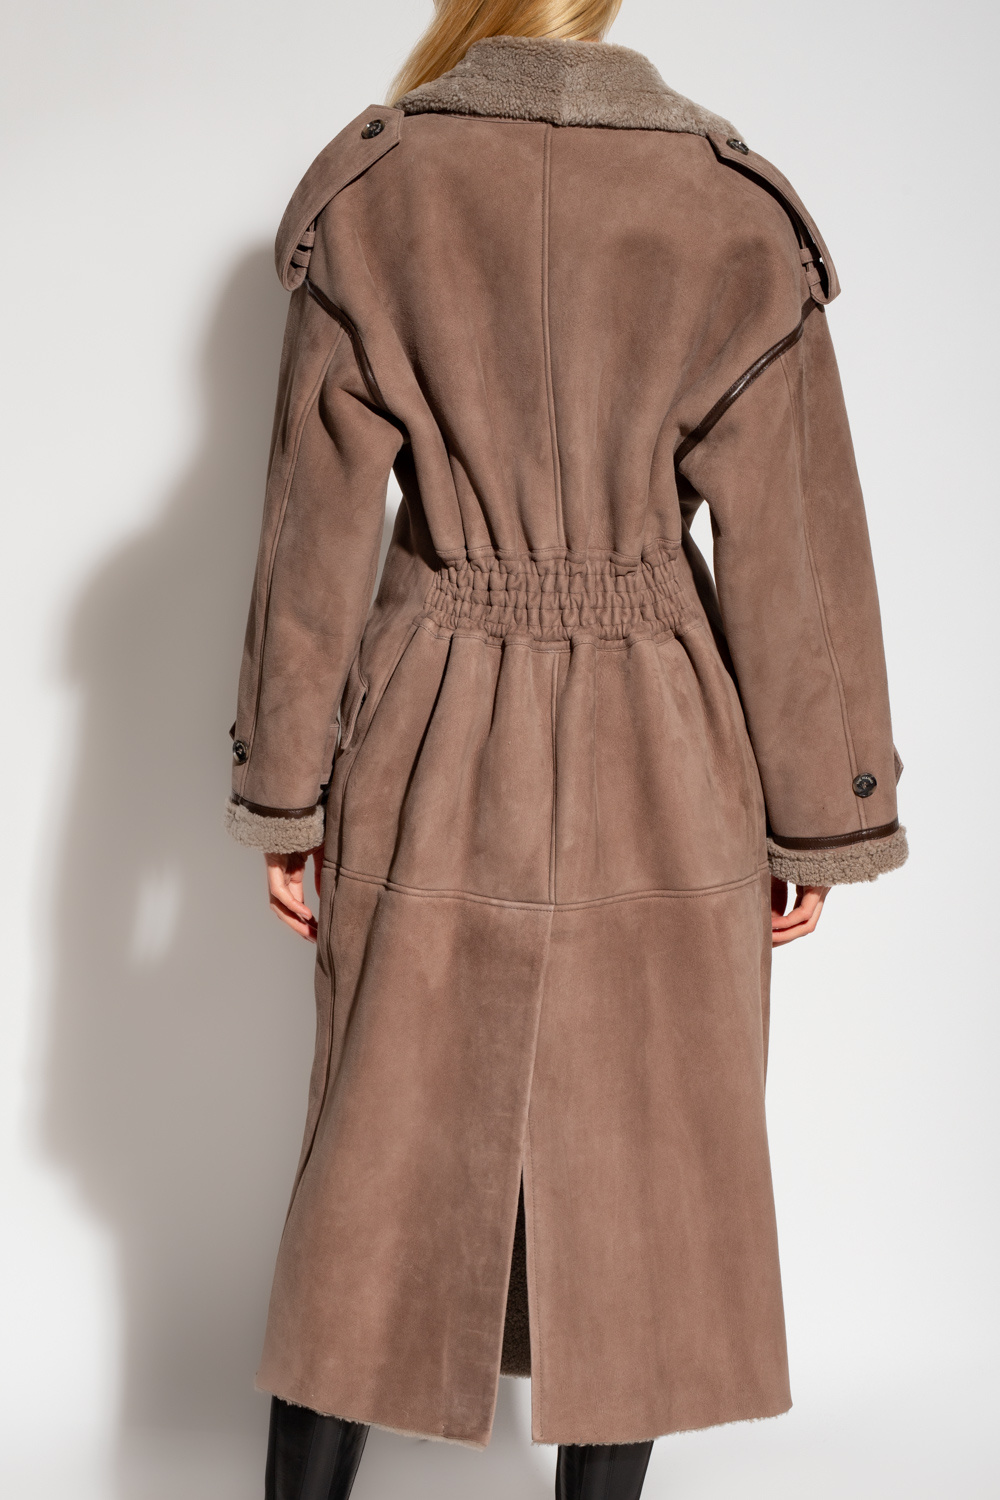 The Mannei ‘Jordan’ long shearling coat